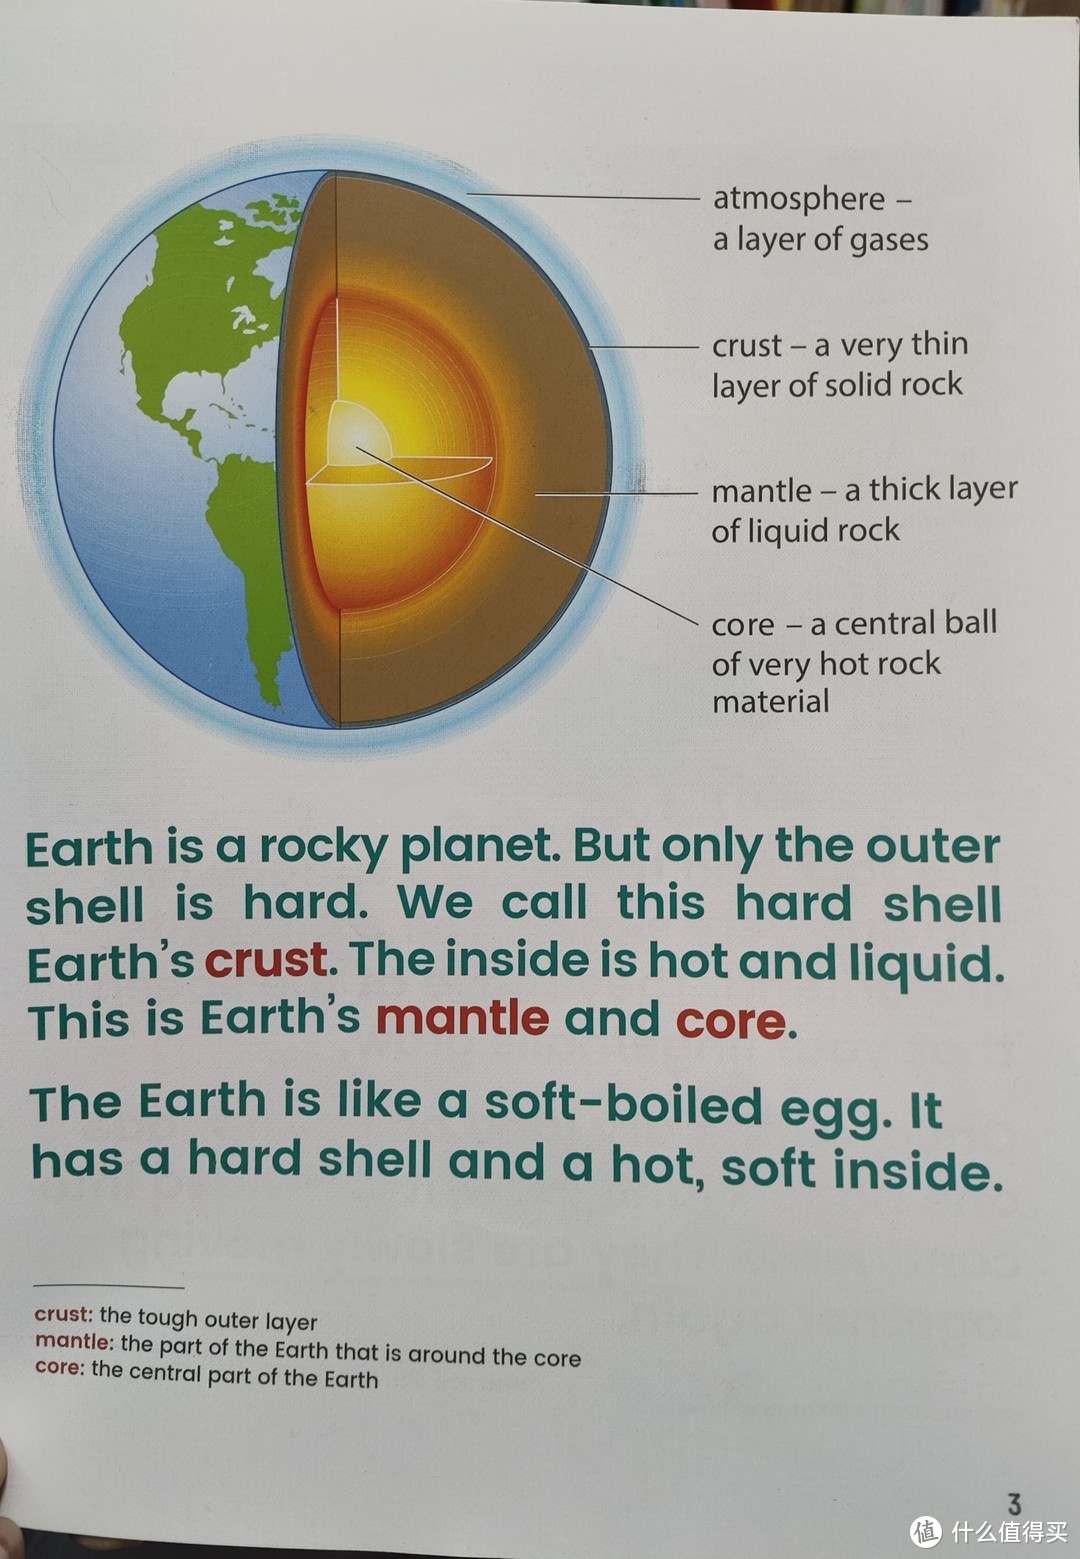 《岩石和土壤》讲解地球的构造